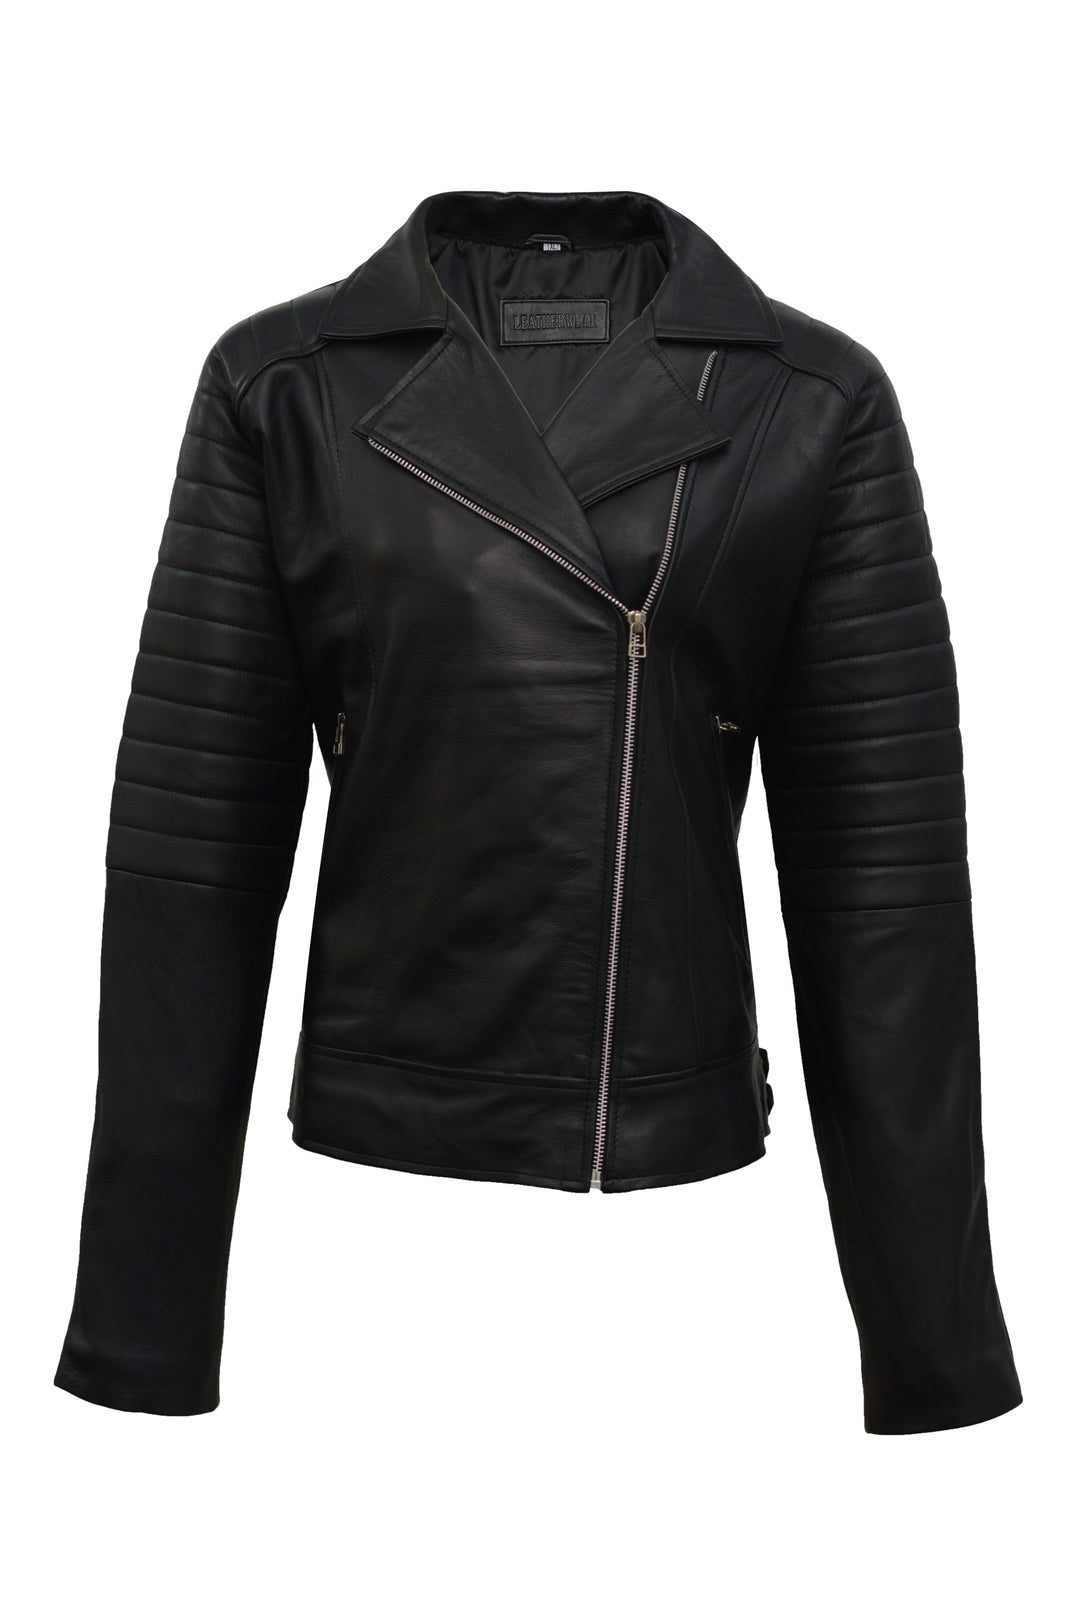 Leather Biker Jacket For Women